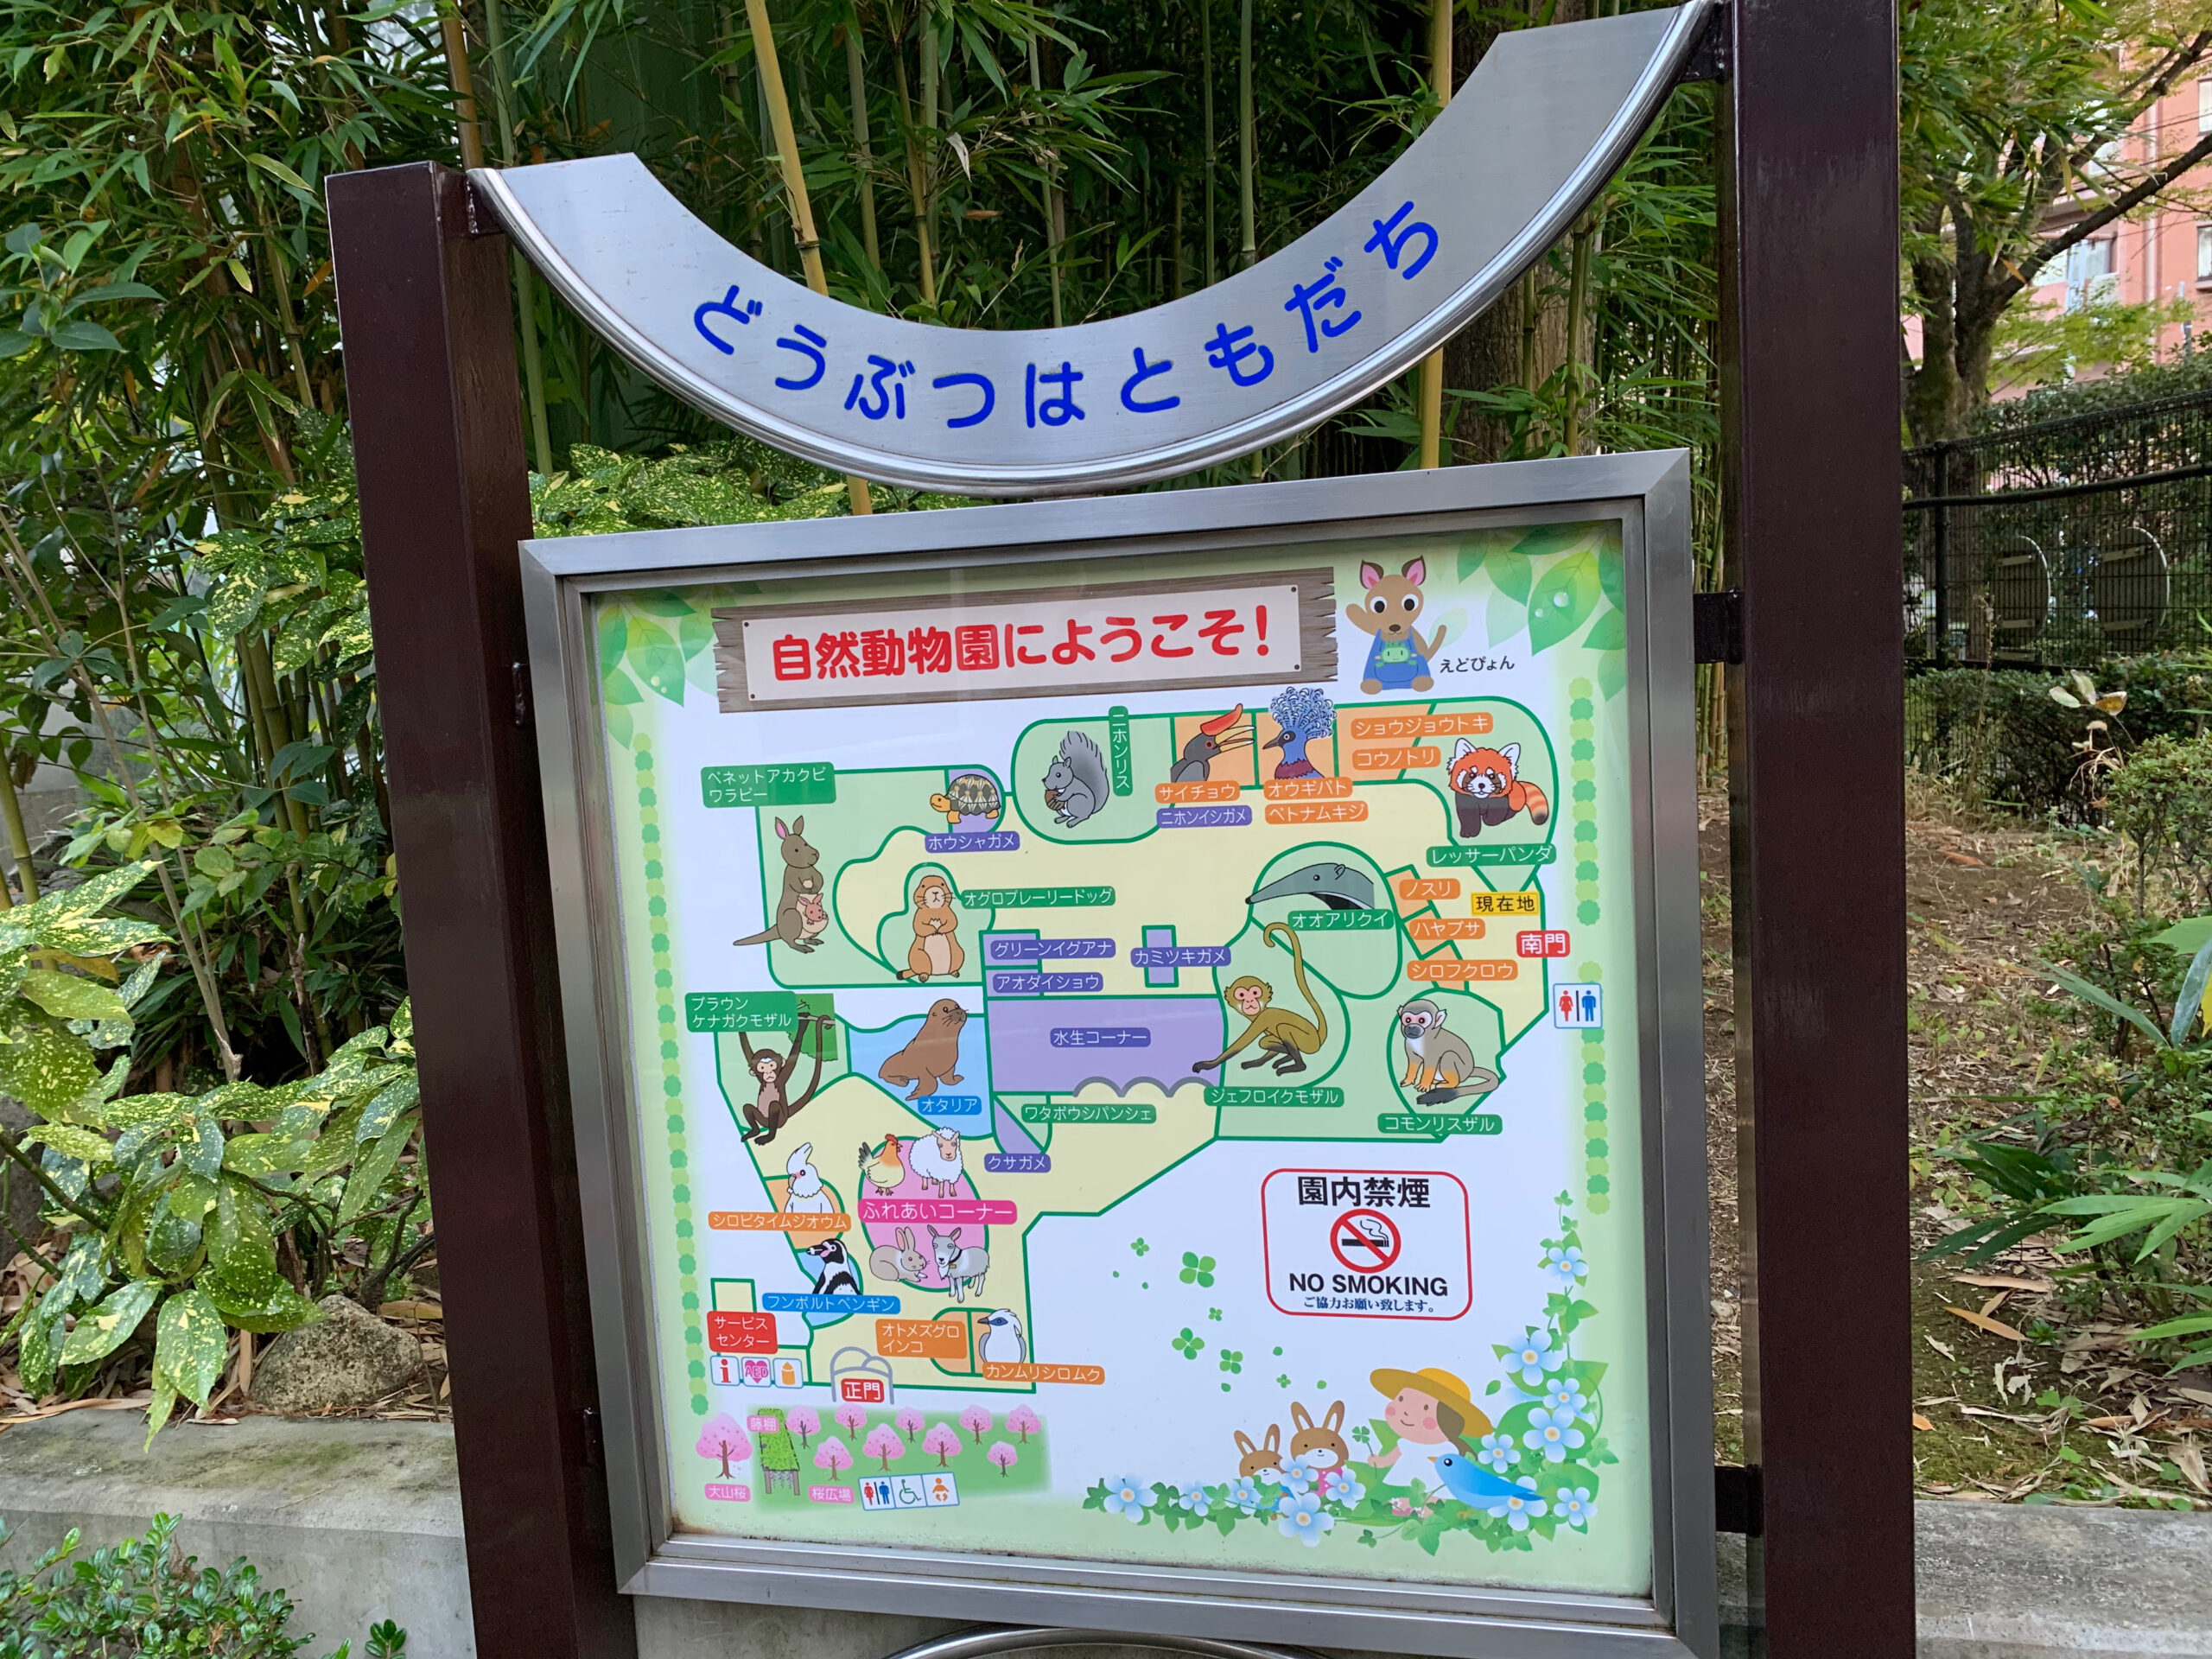 江戸川区自然動物園は、入園料無料で満足度が高い動物園です